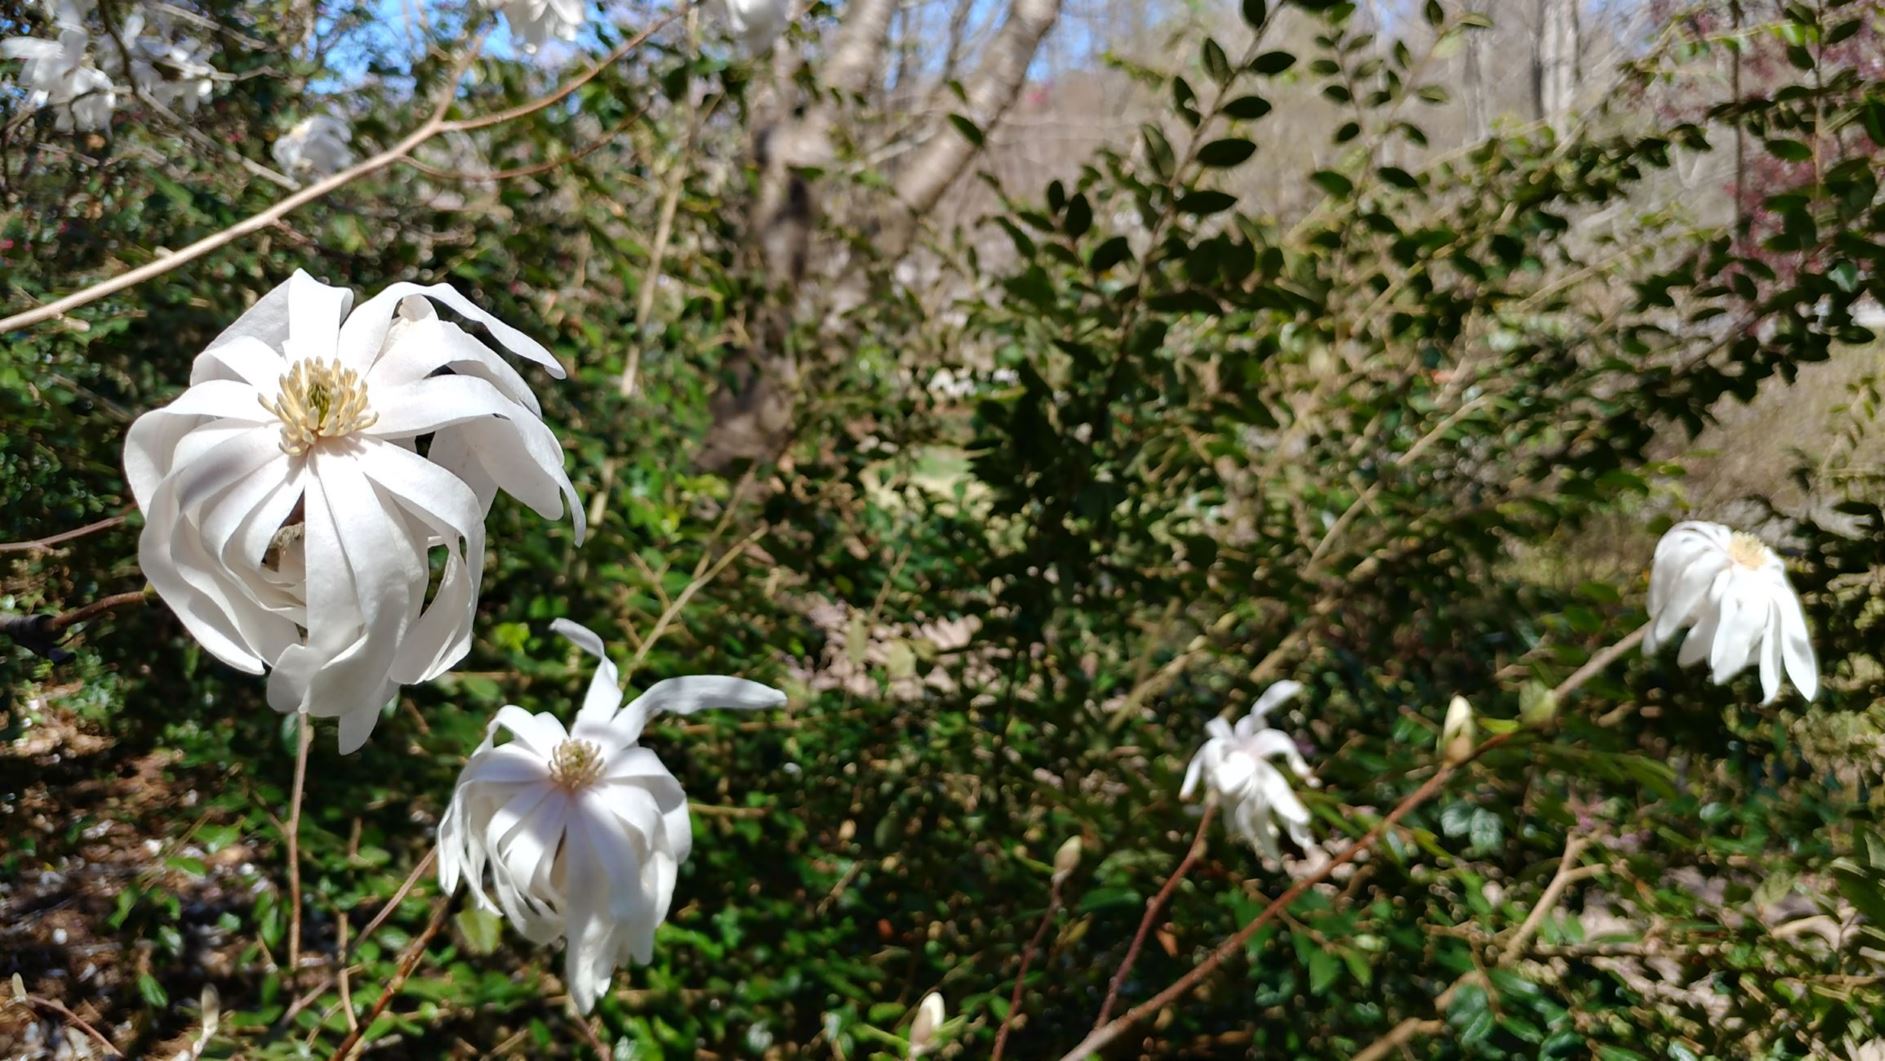 Magnolia stellata - star magnolia